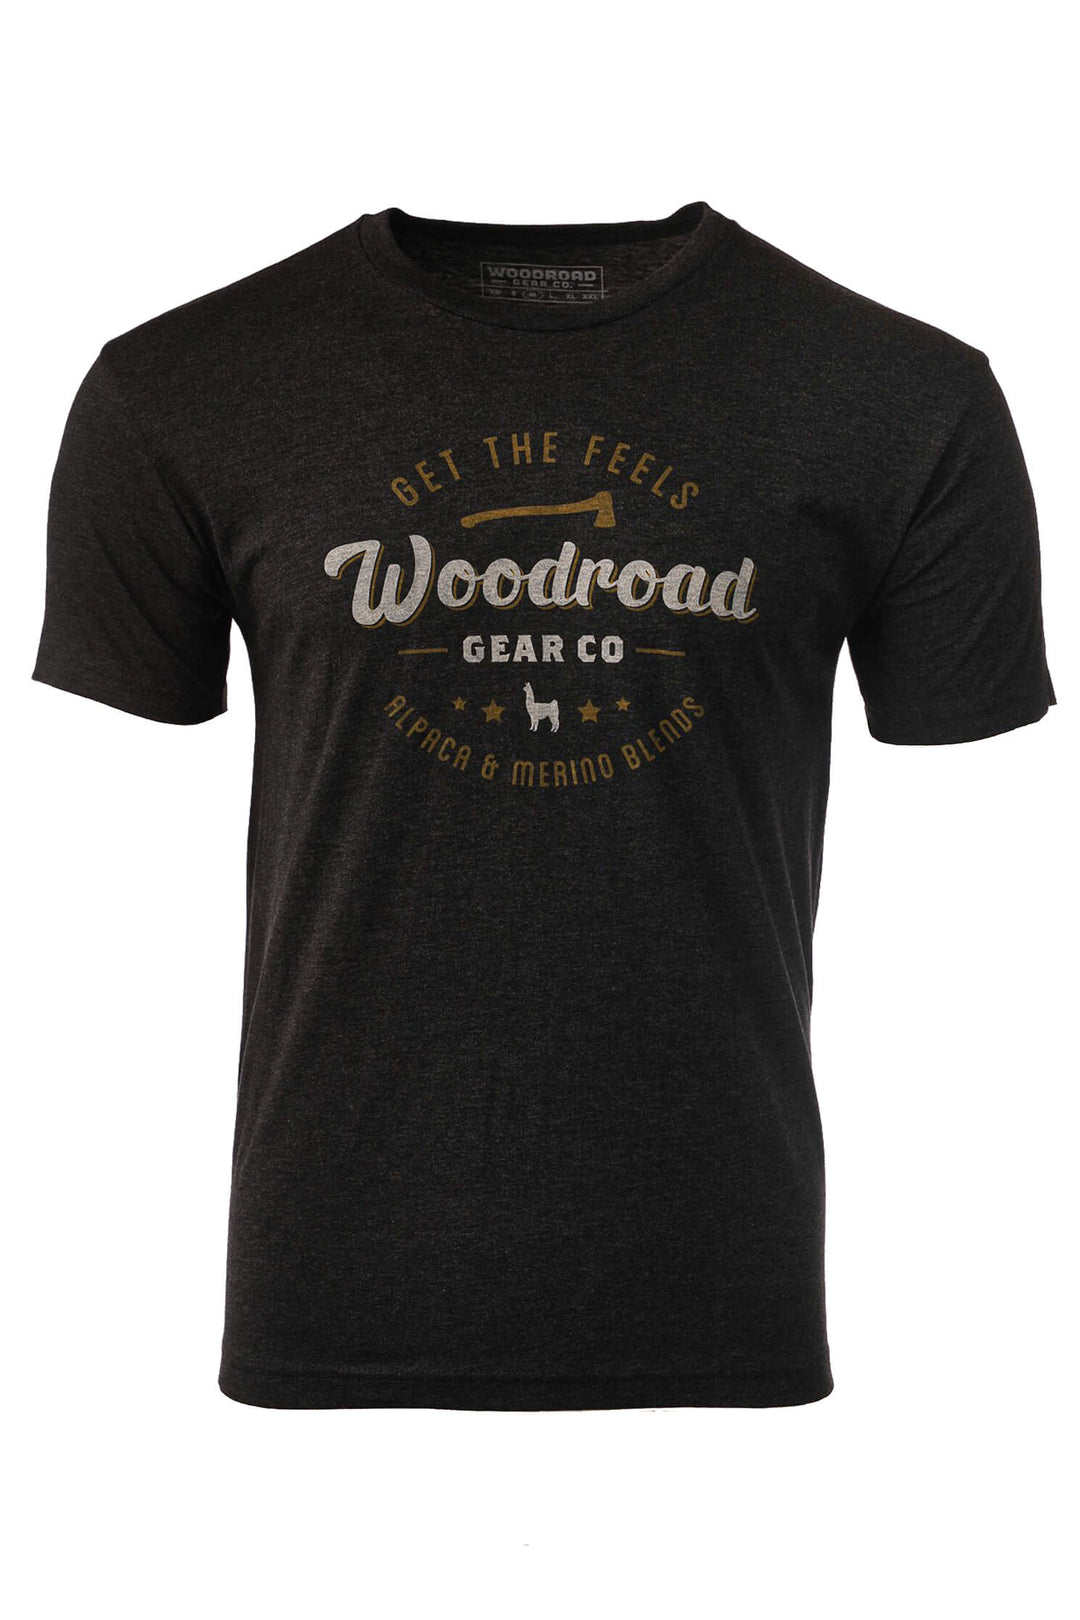 Get The Feels - Black - T-shirt - Woodroad Gear Co.